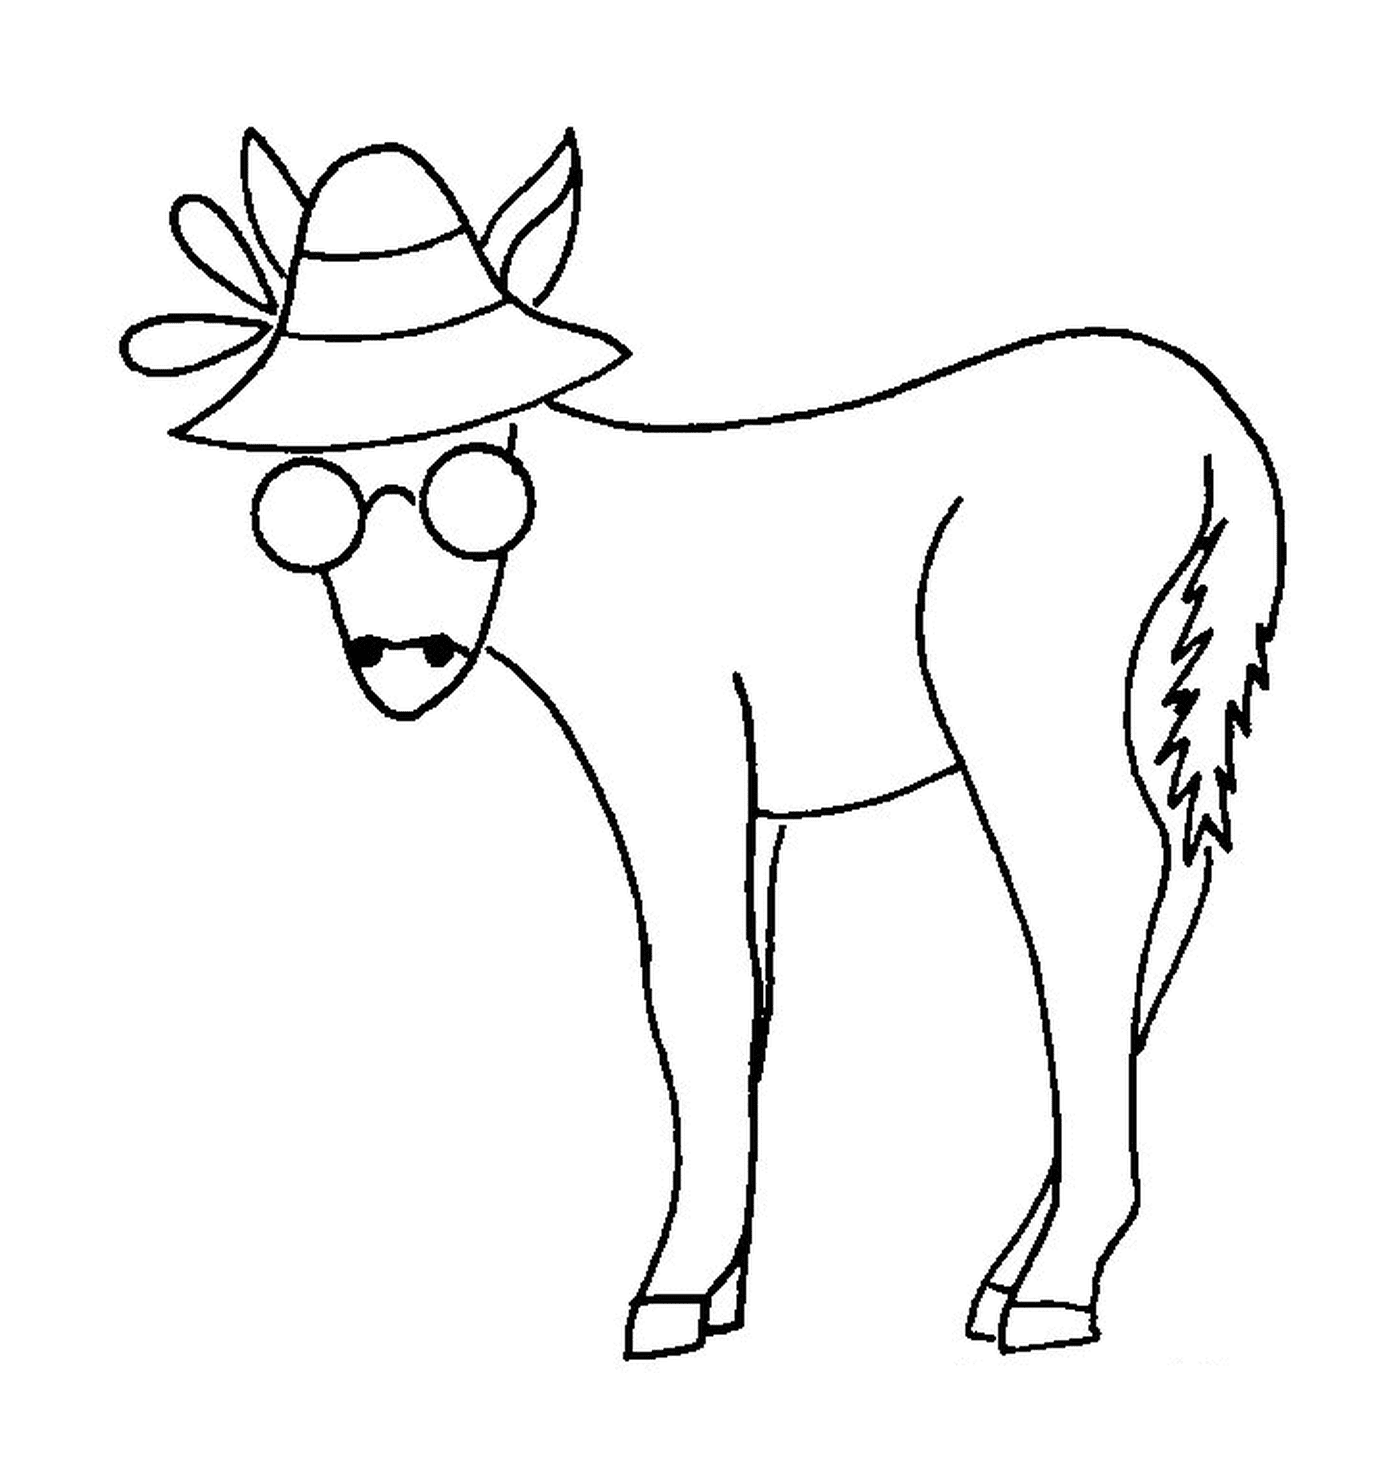  Un caballo con sombrero y gafas en la cabeza 